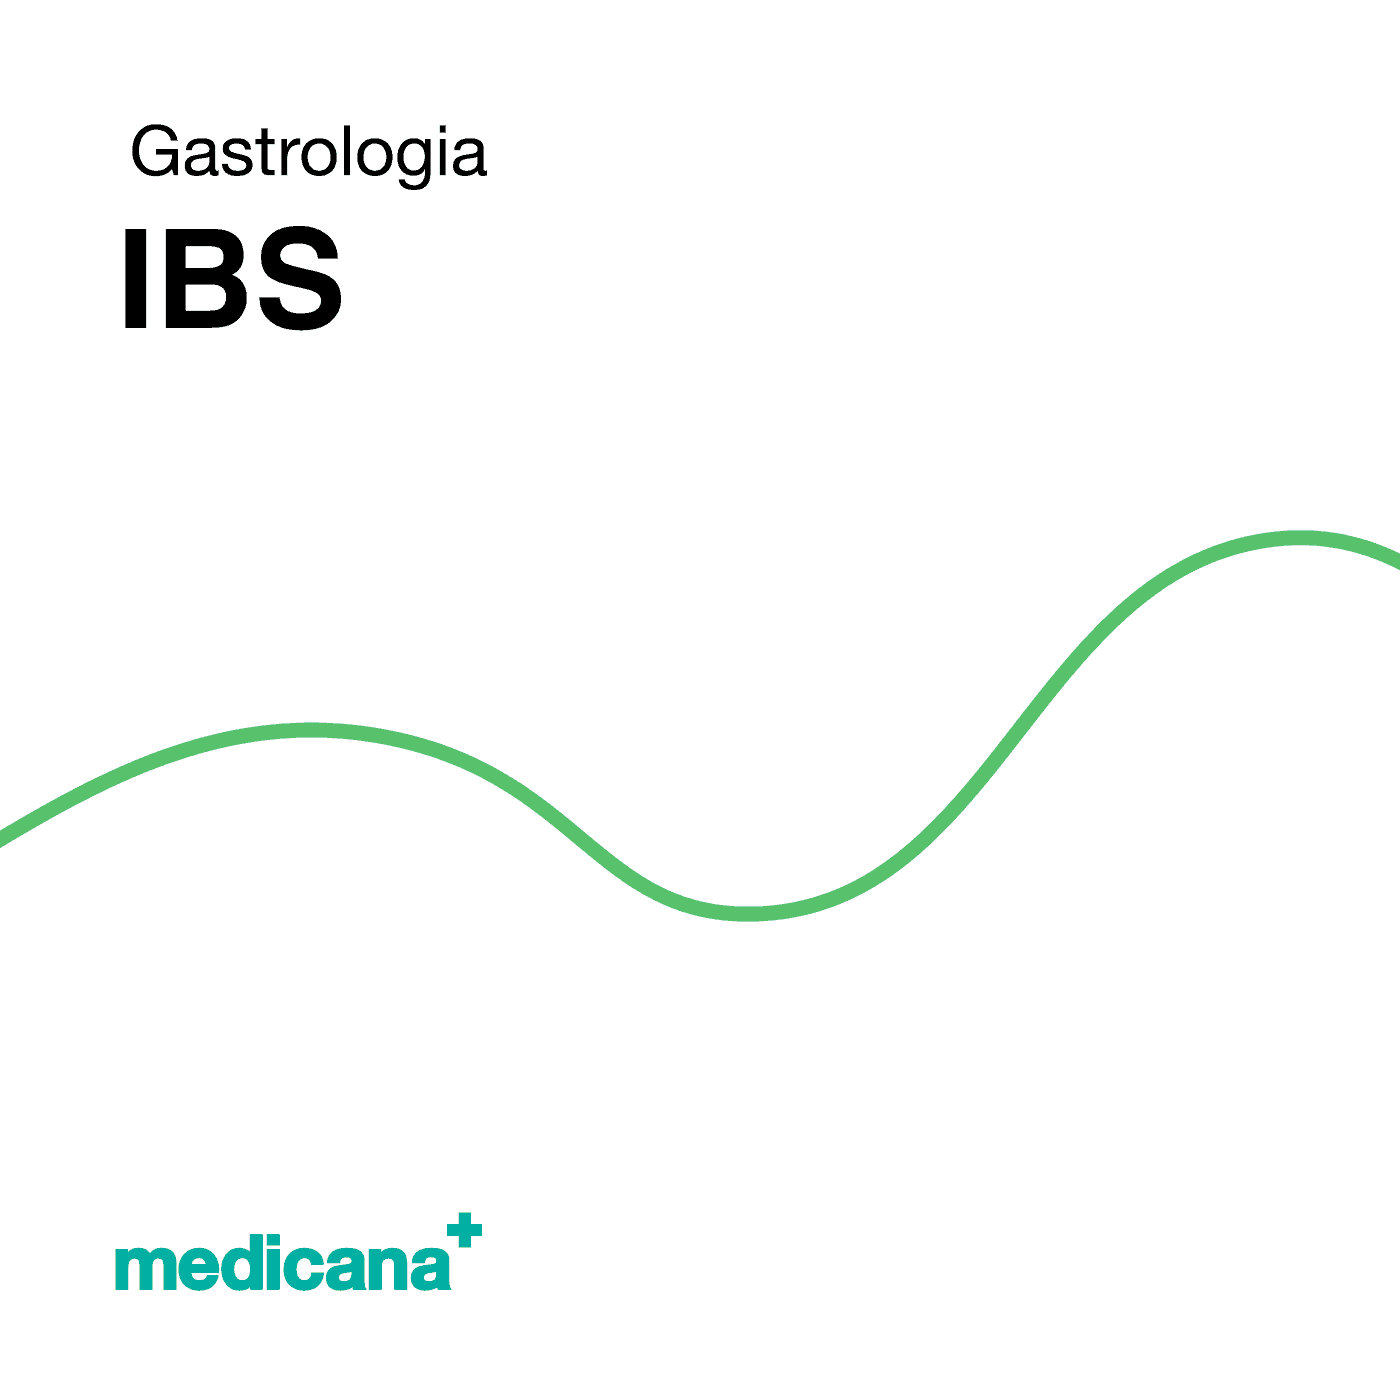 Grafika, białe tło z zieloną kreską, czarnym napisem Gastrologia - IBS i logo Medicana Centrum Terapii Medyczna Marihuana w lewym dolnym rogu.